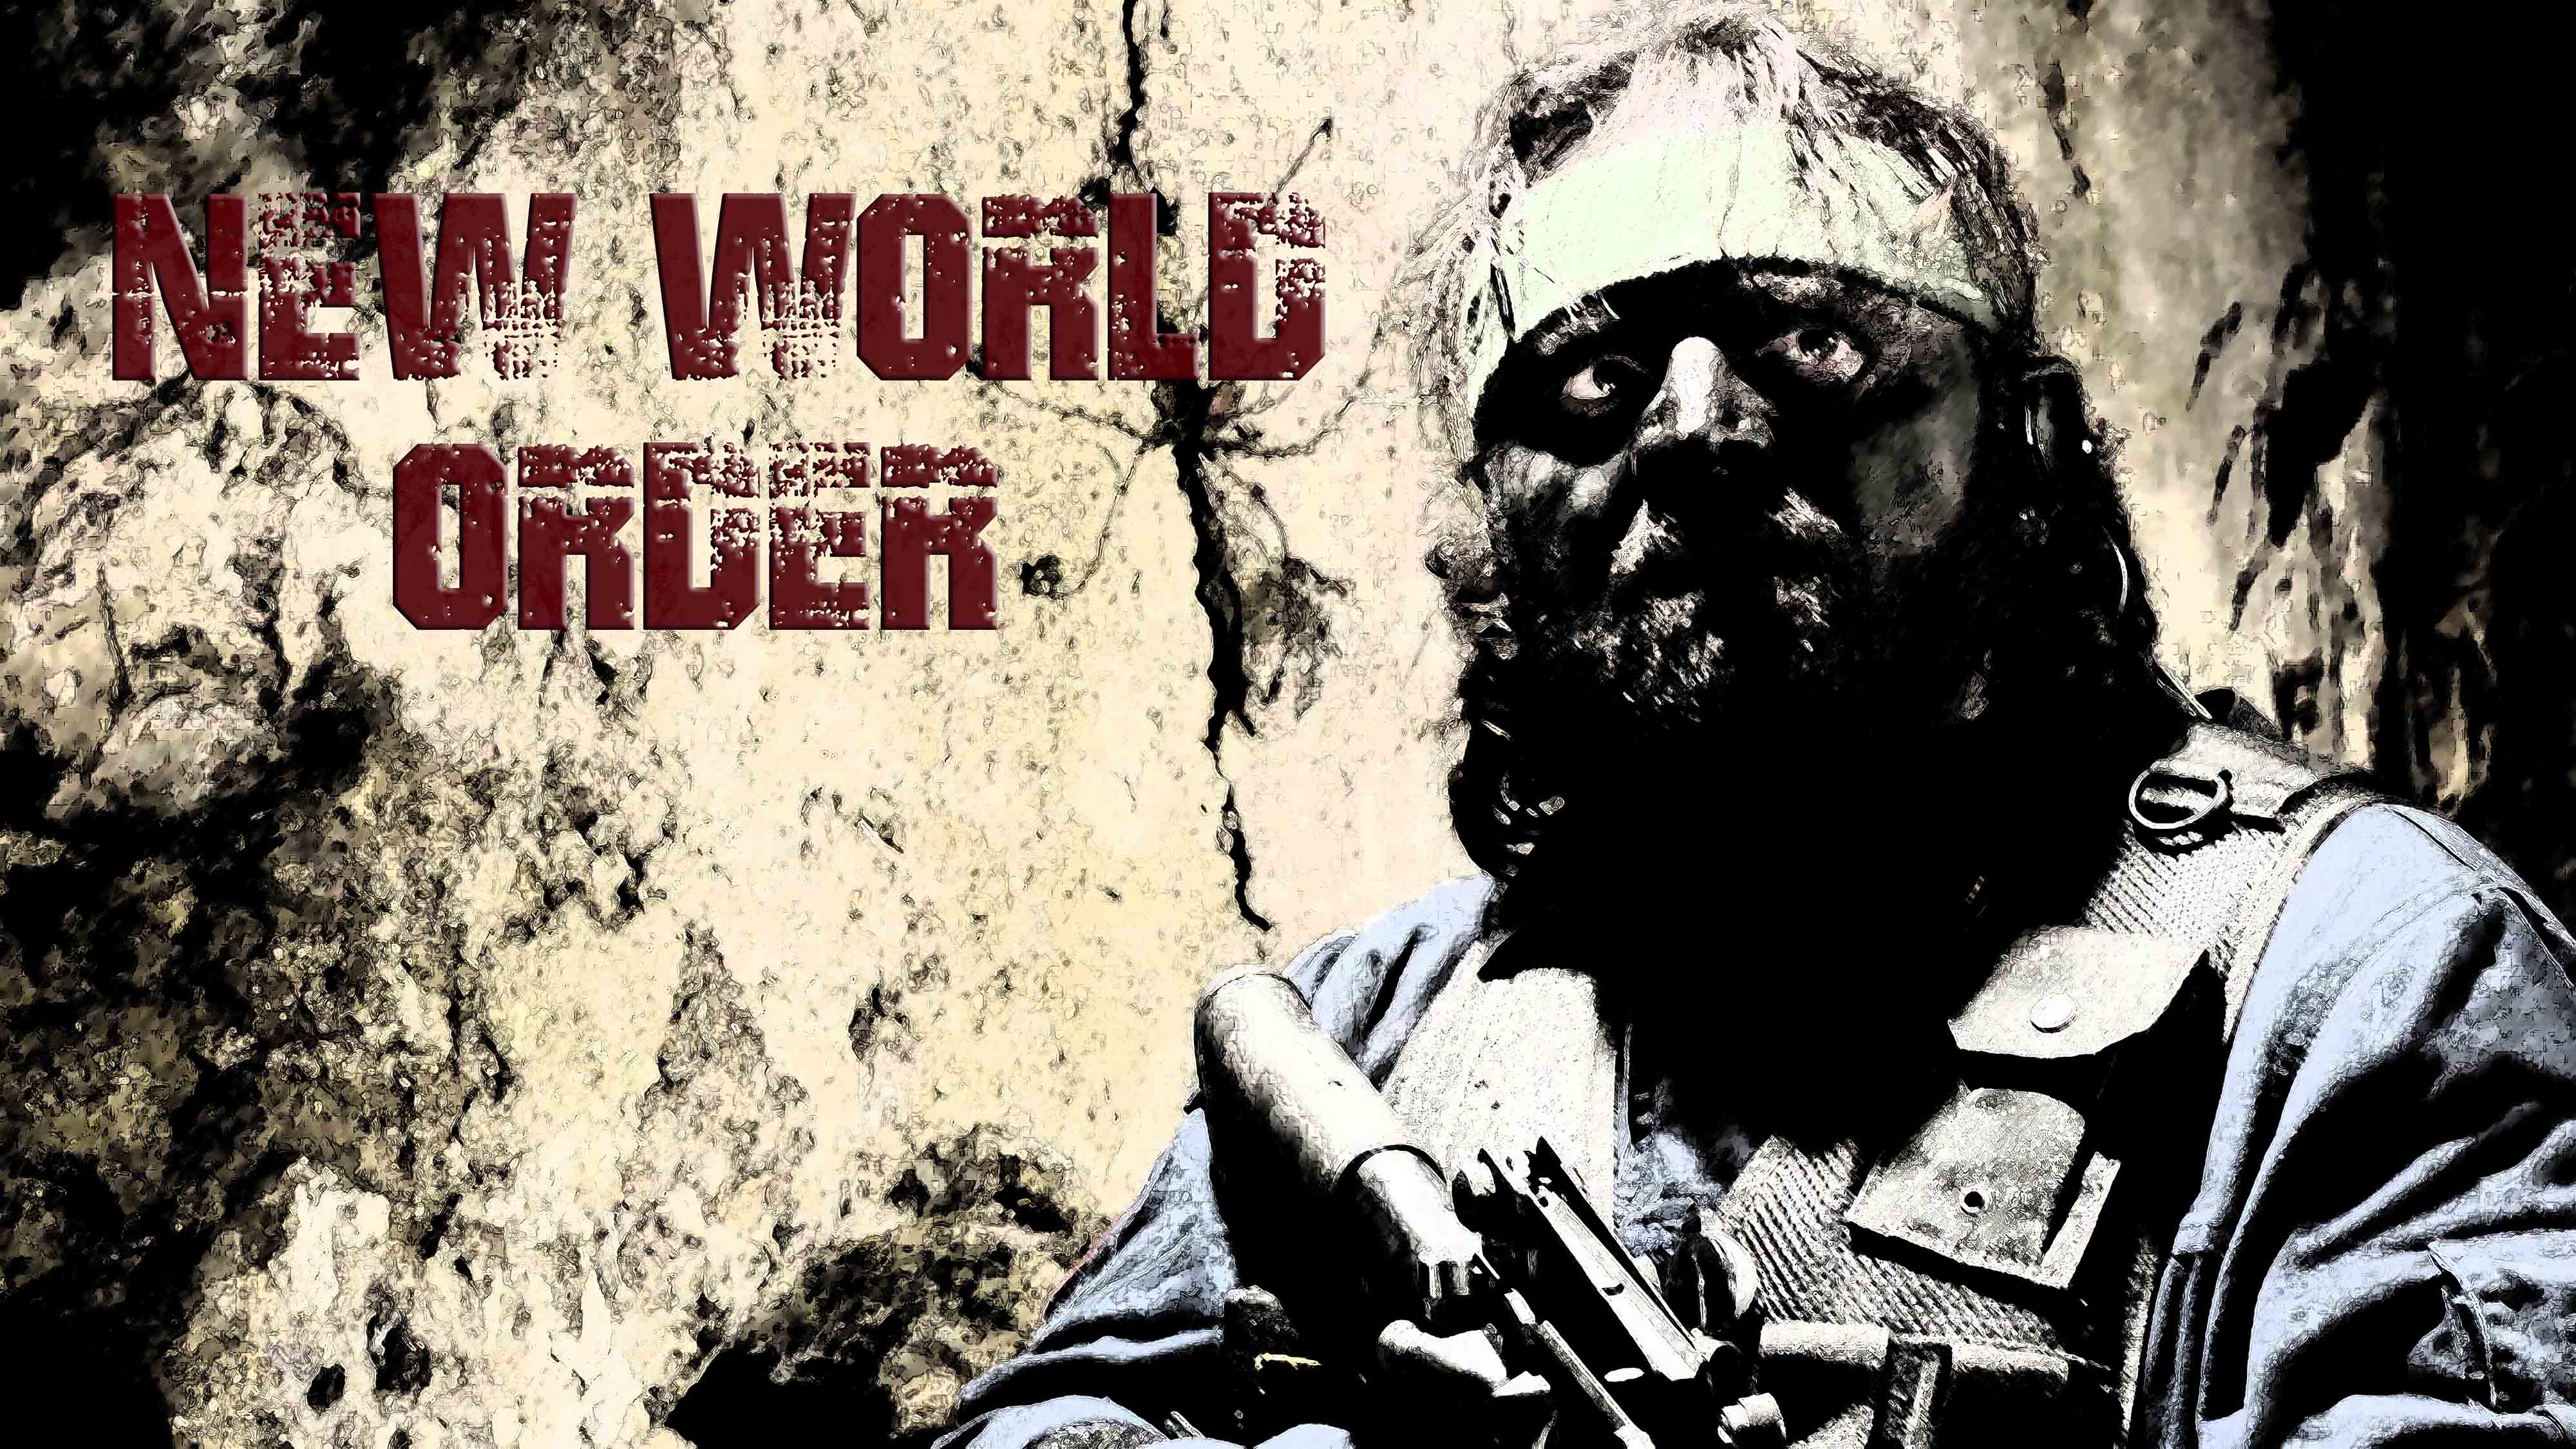 New World Order Film